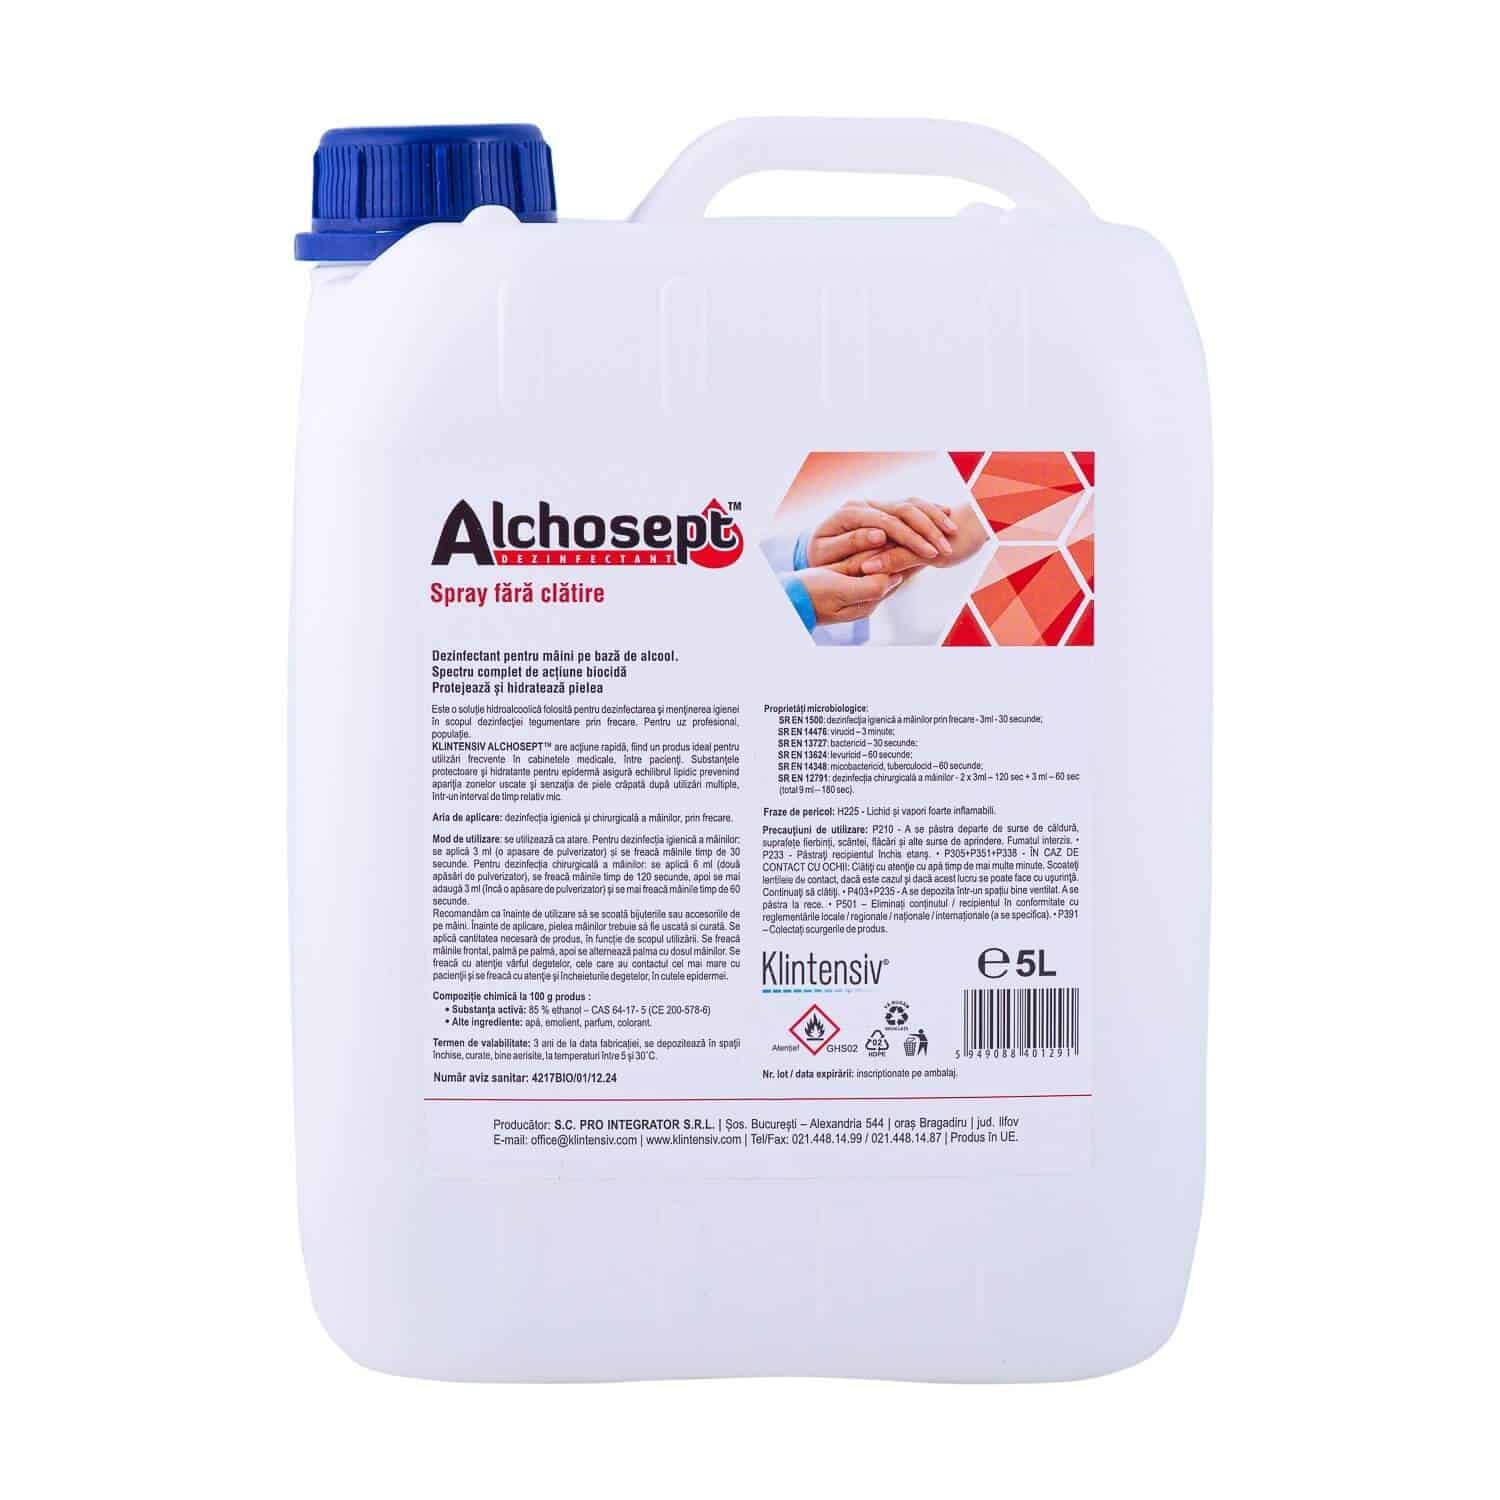 Klintensiv Alchosept® - dezinfectant pentru maini si tegumente, 5 litri (cadou august)